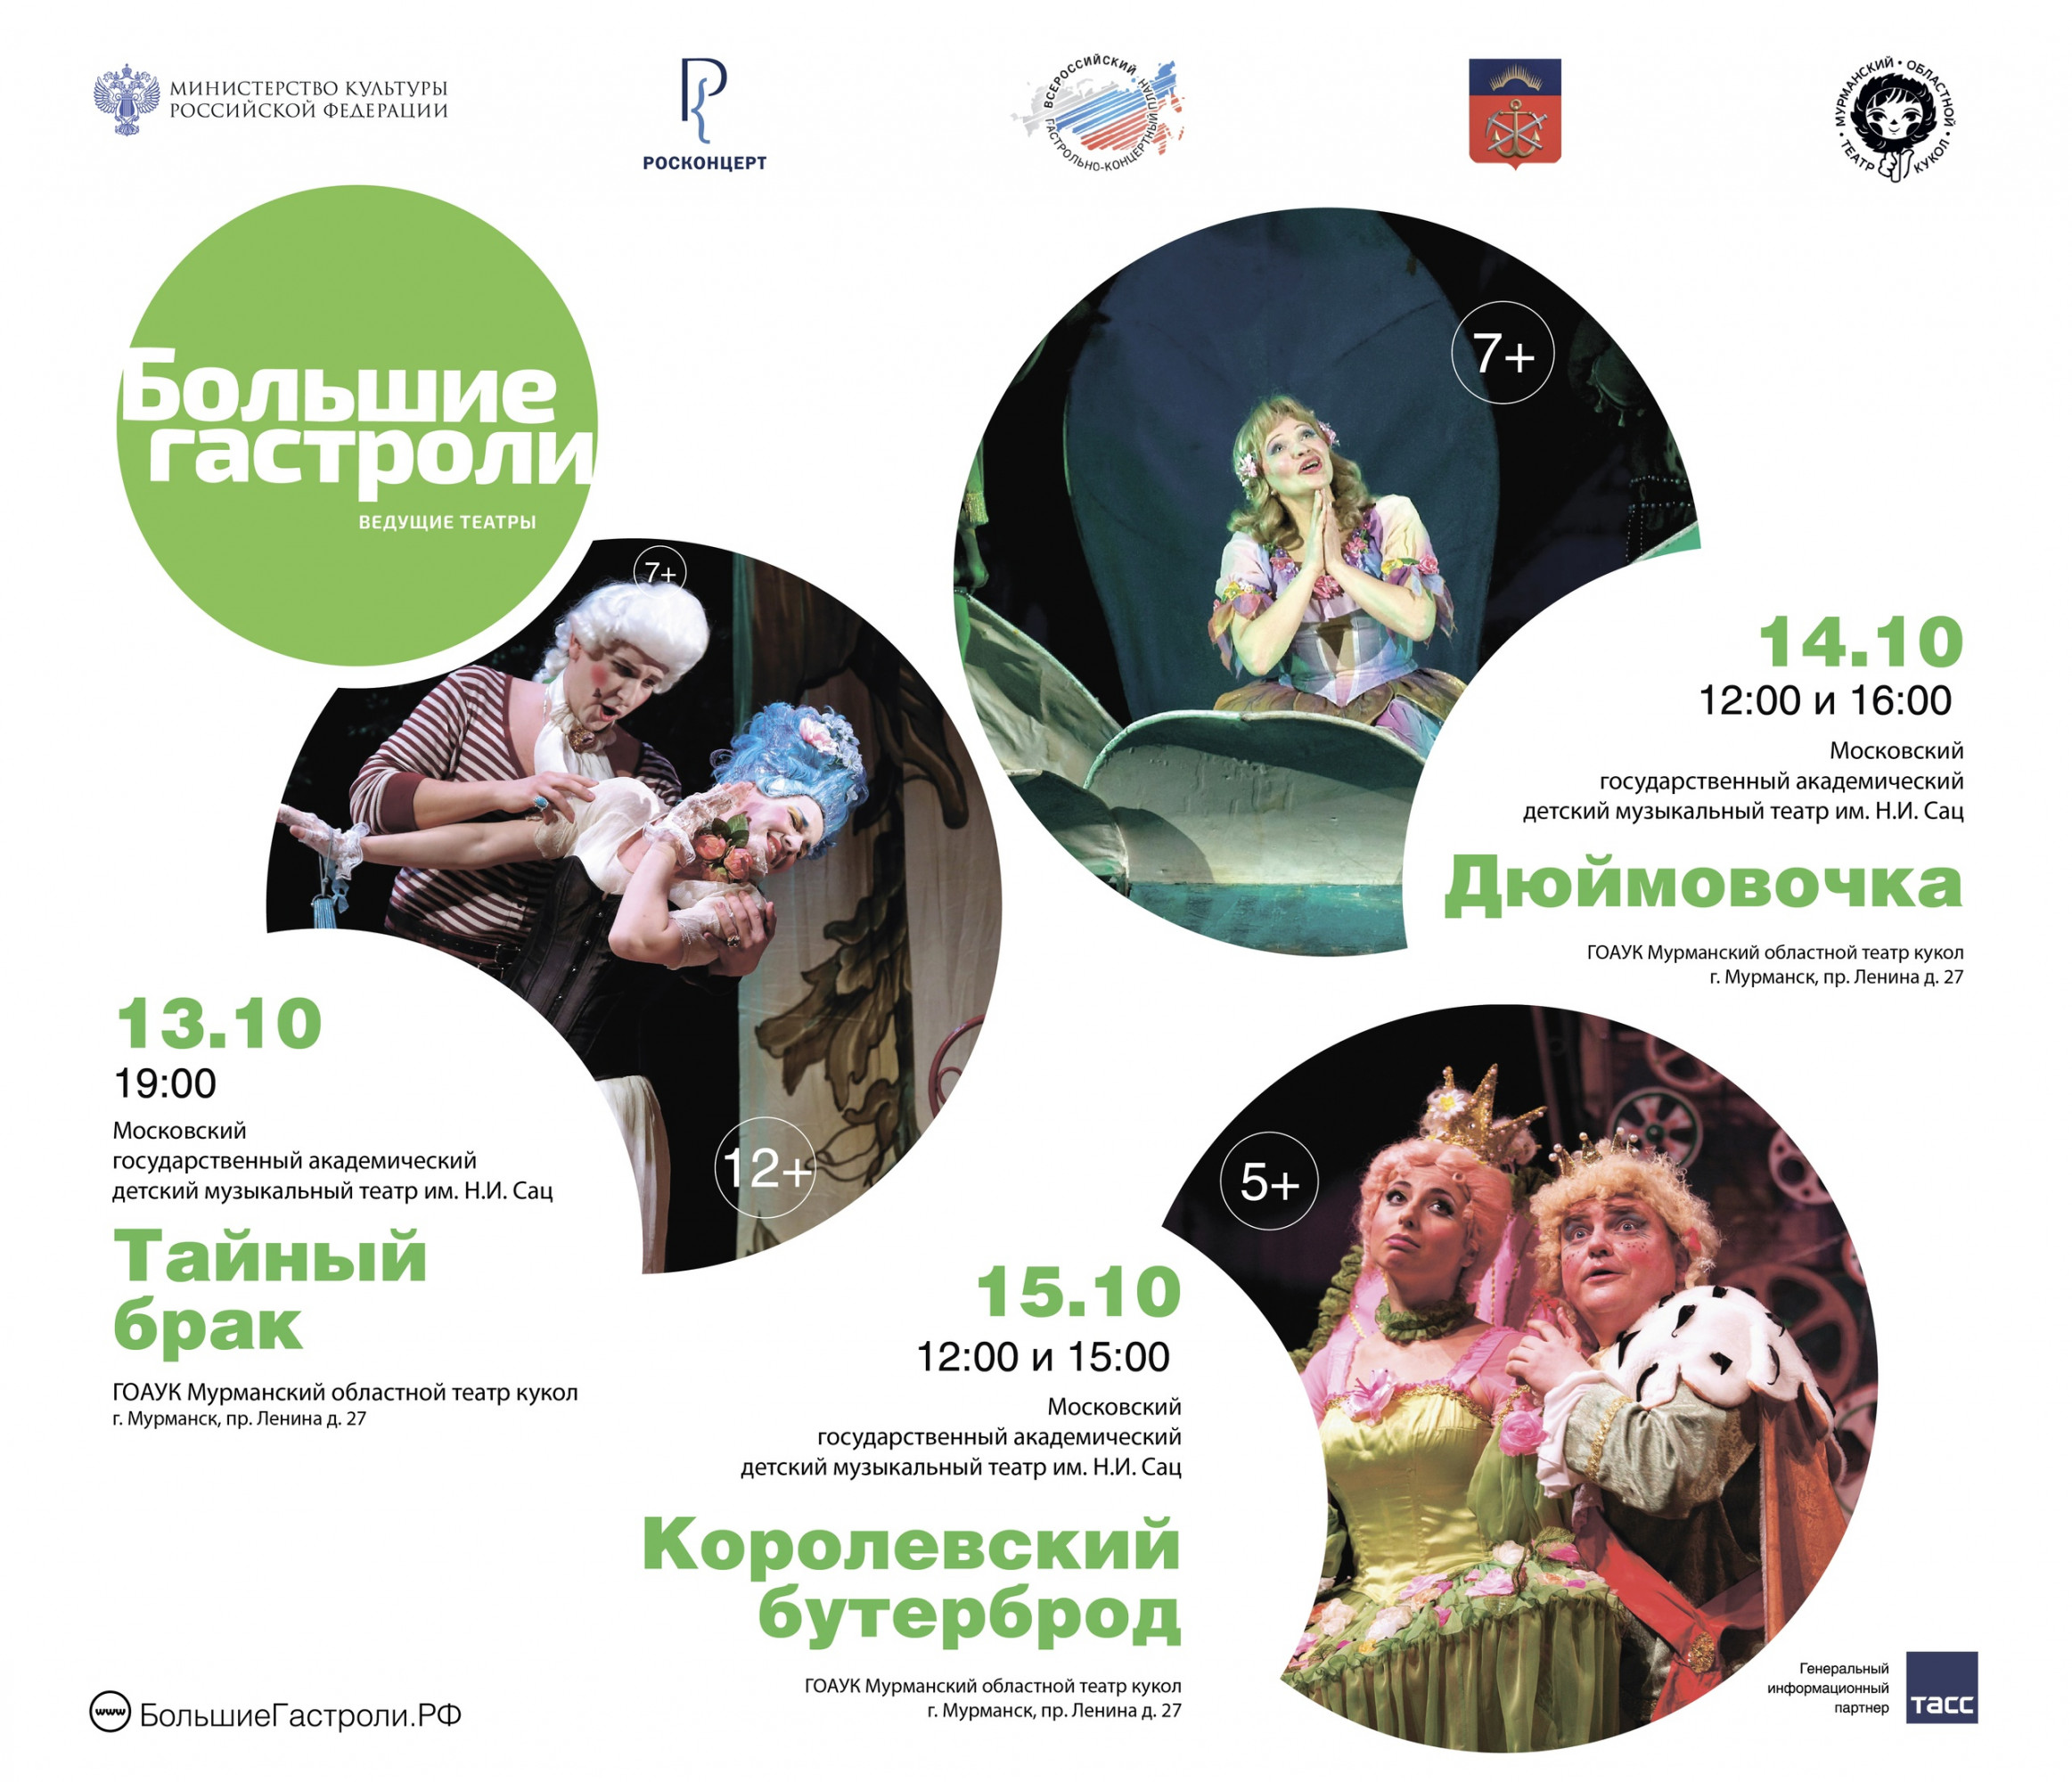 В Мурманск приехала труппа Московского государственного академического детского музыкального театра имени Наталии Сац